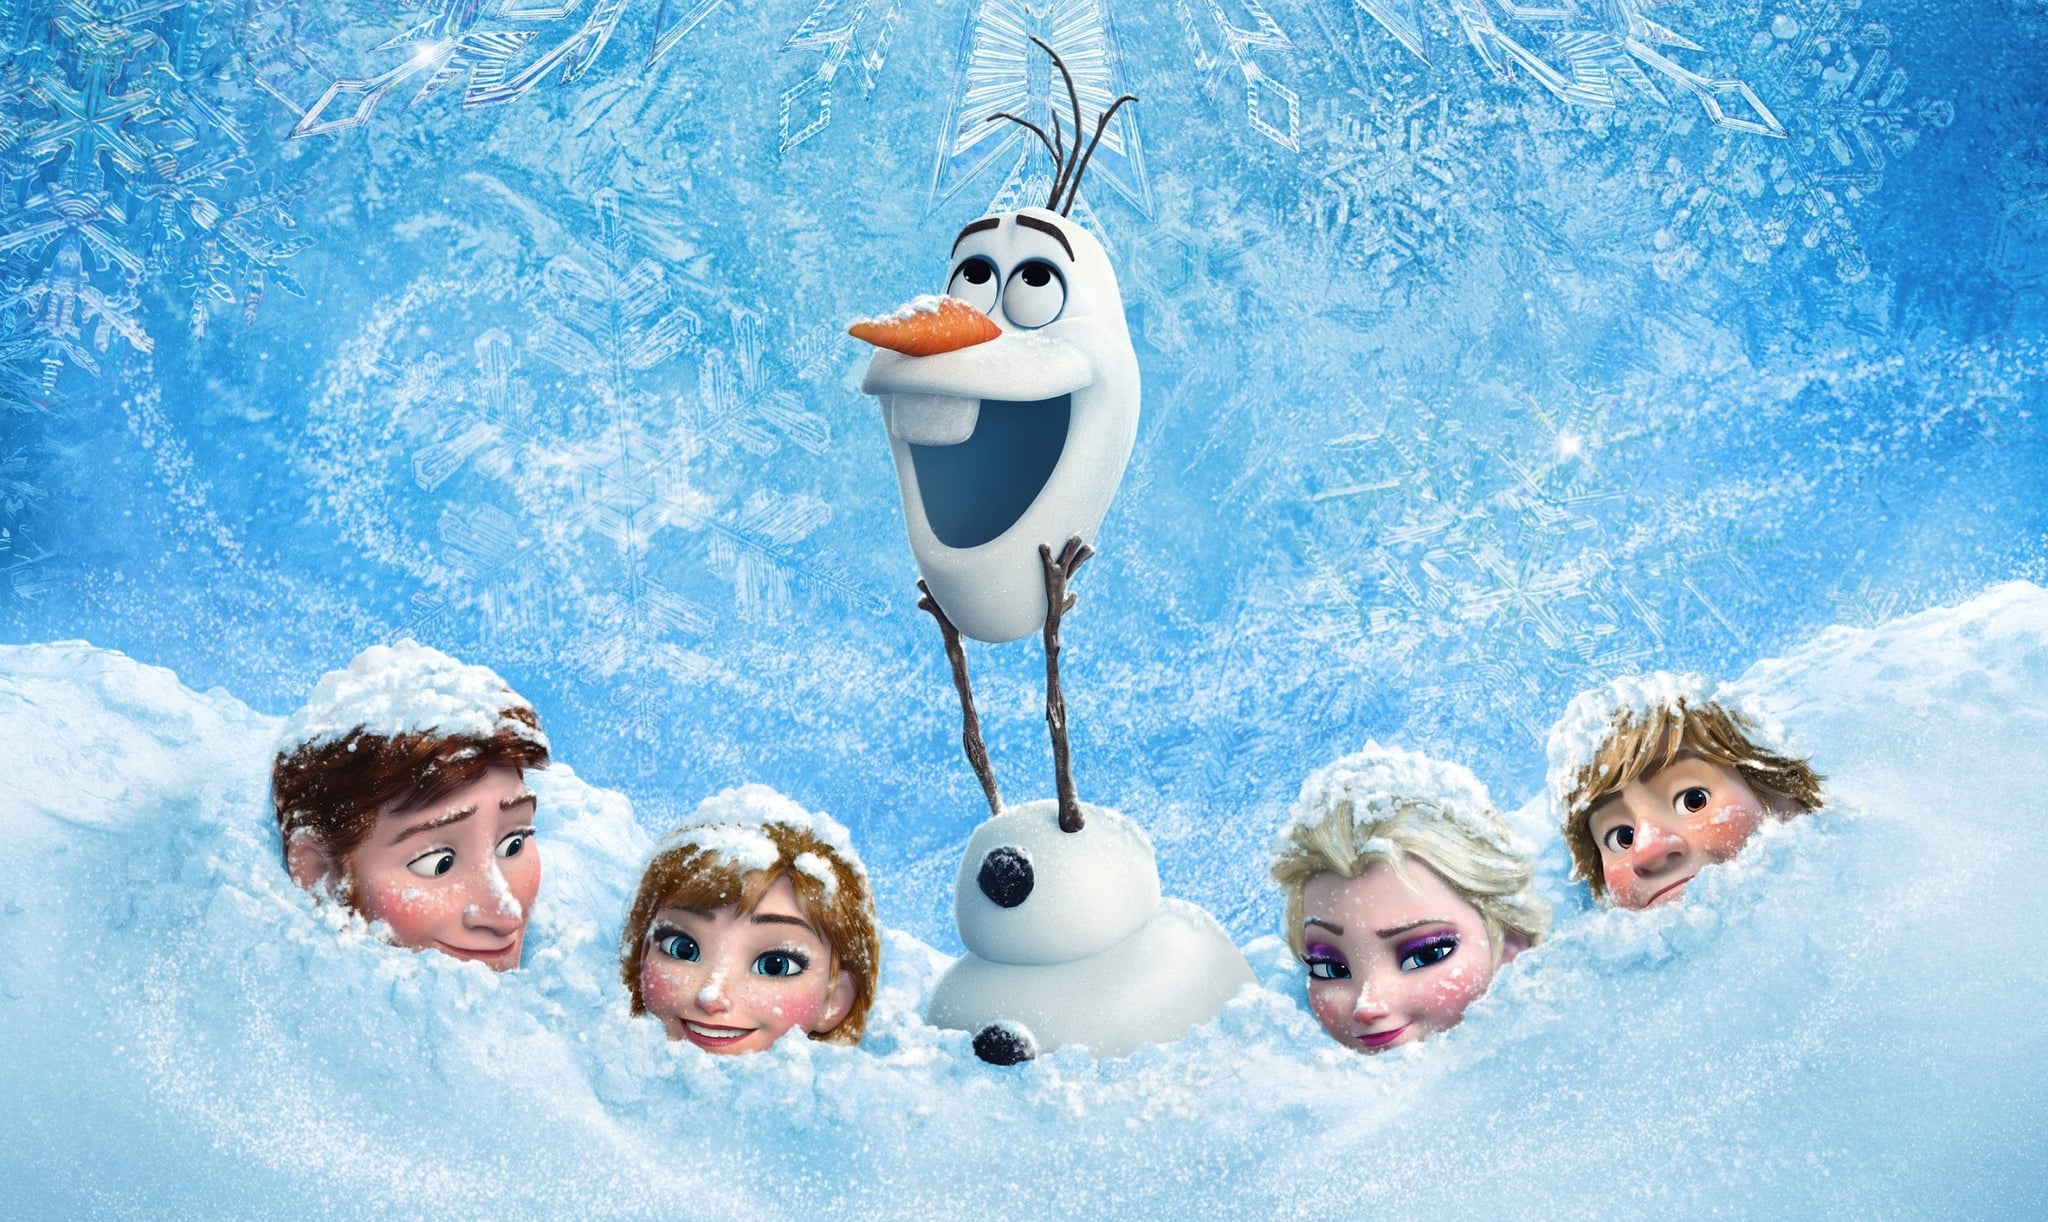 Frozen Movie Getting Short Film Sequel Frozen Fever | POPSUGAR Entertainment